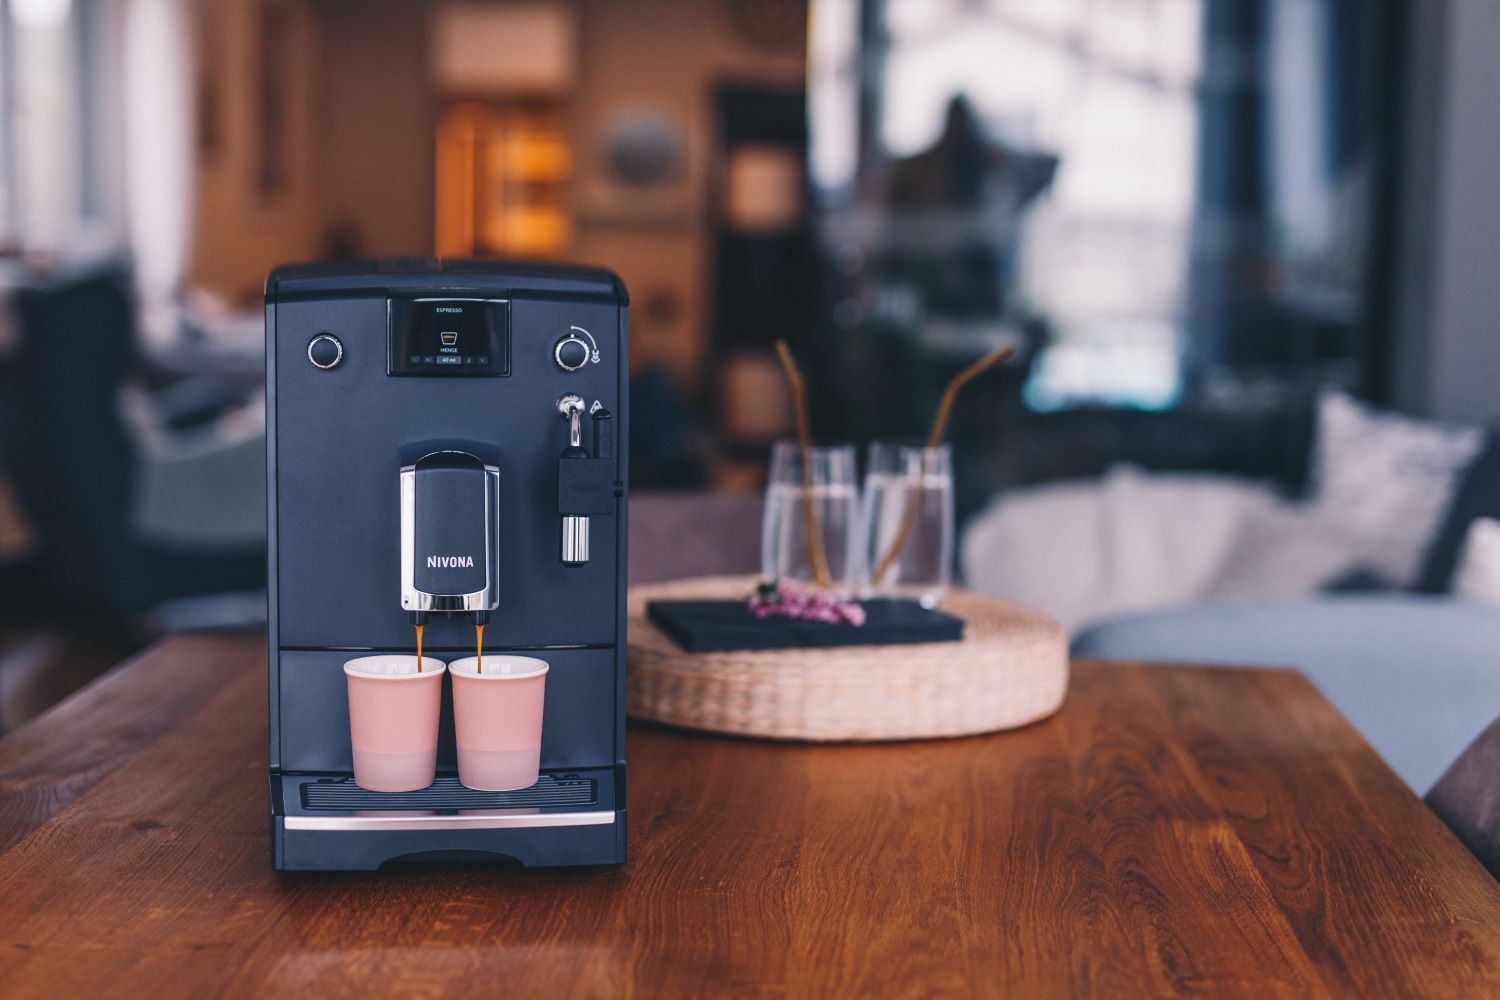 NICR 550 CafeRomatica visiškai automatinis espreso aparatas